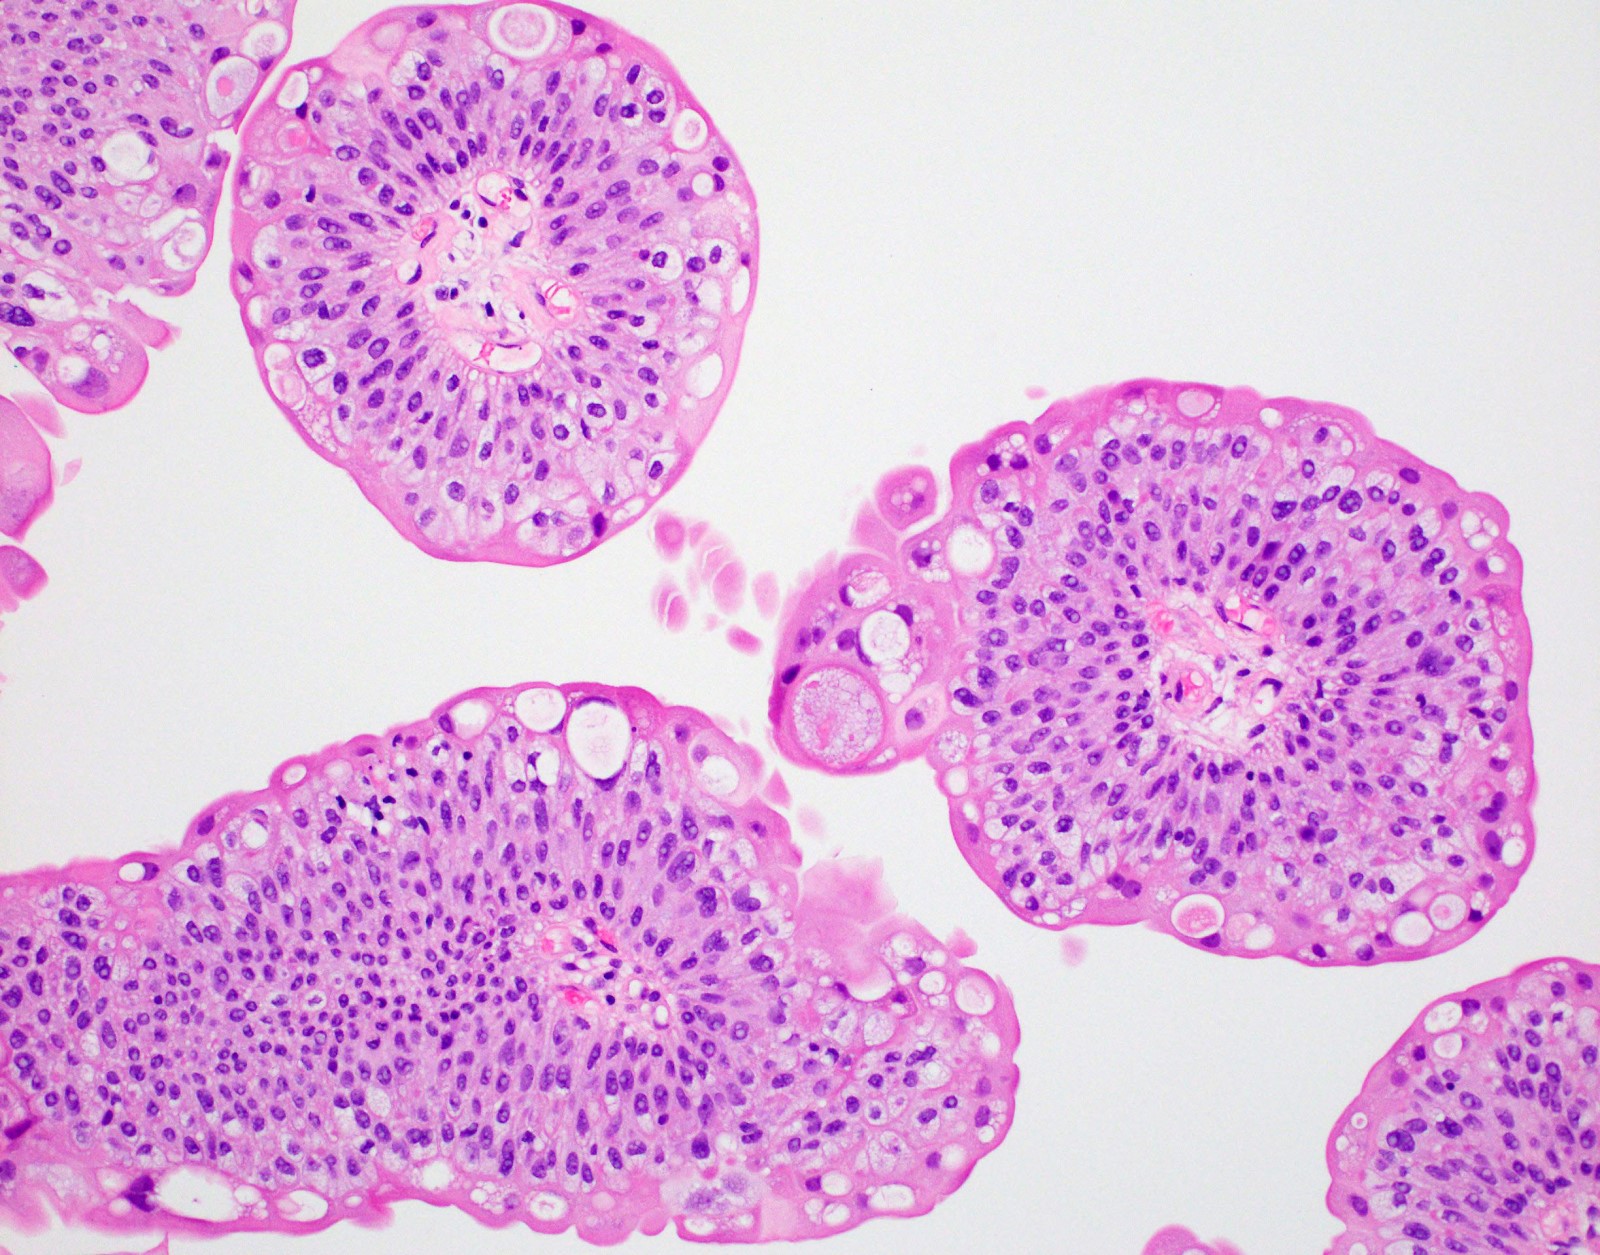 Bladder papilloma pathology